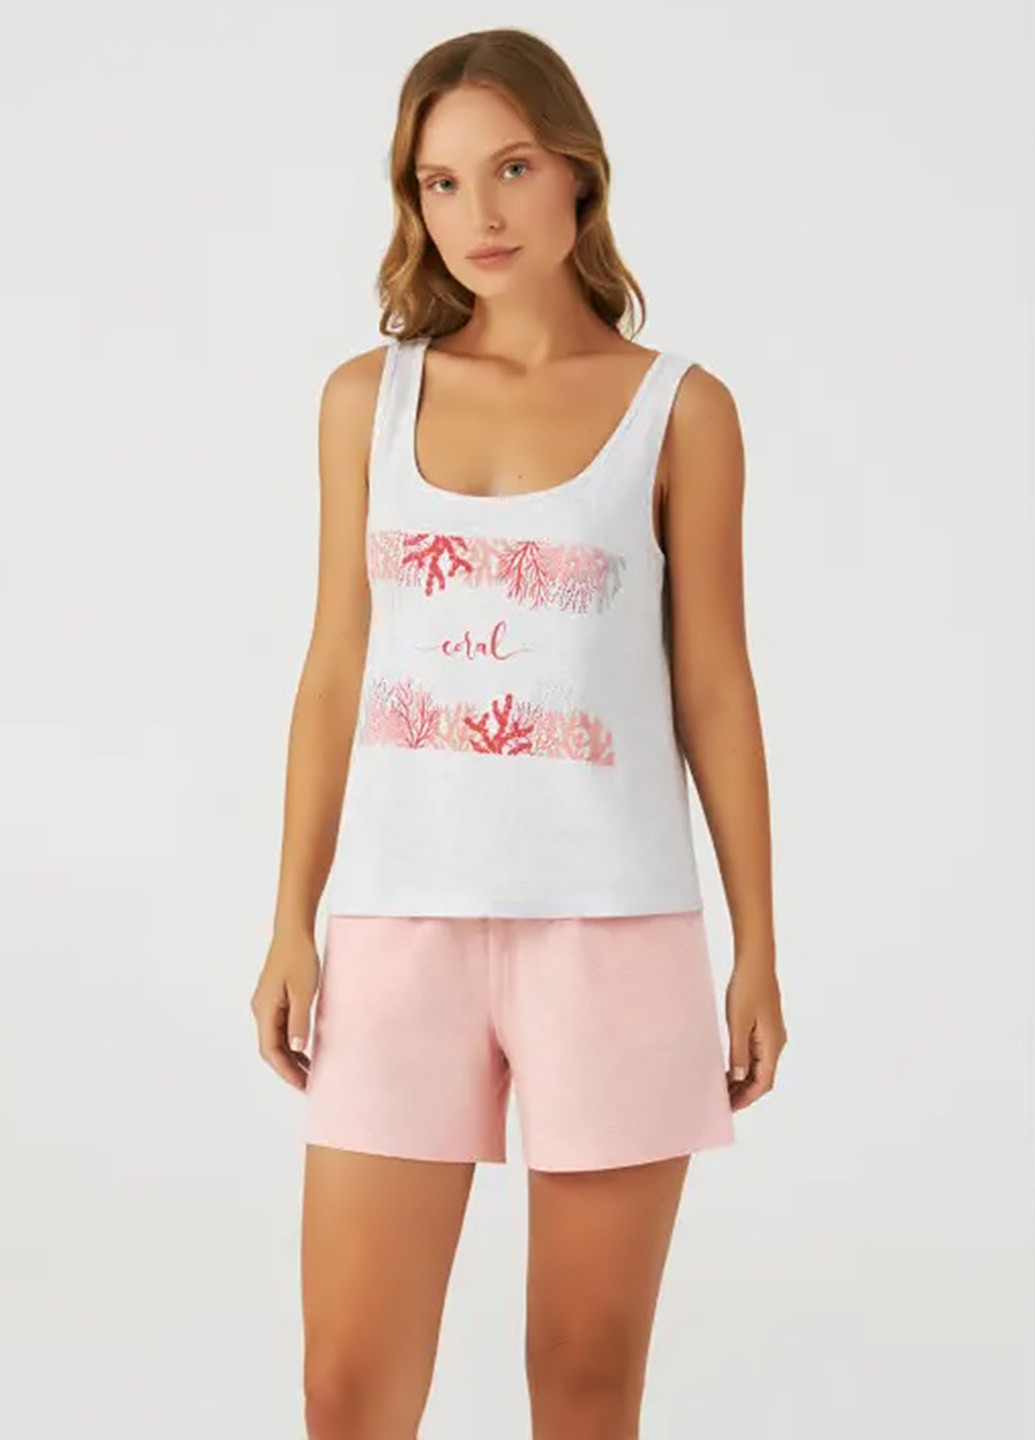 Розовая всесезон пижама (майка, шорты) майка + шорты Ellen